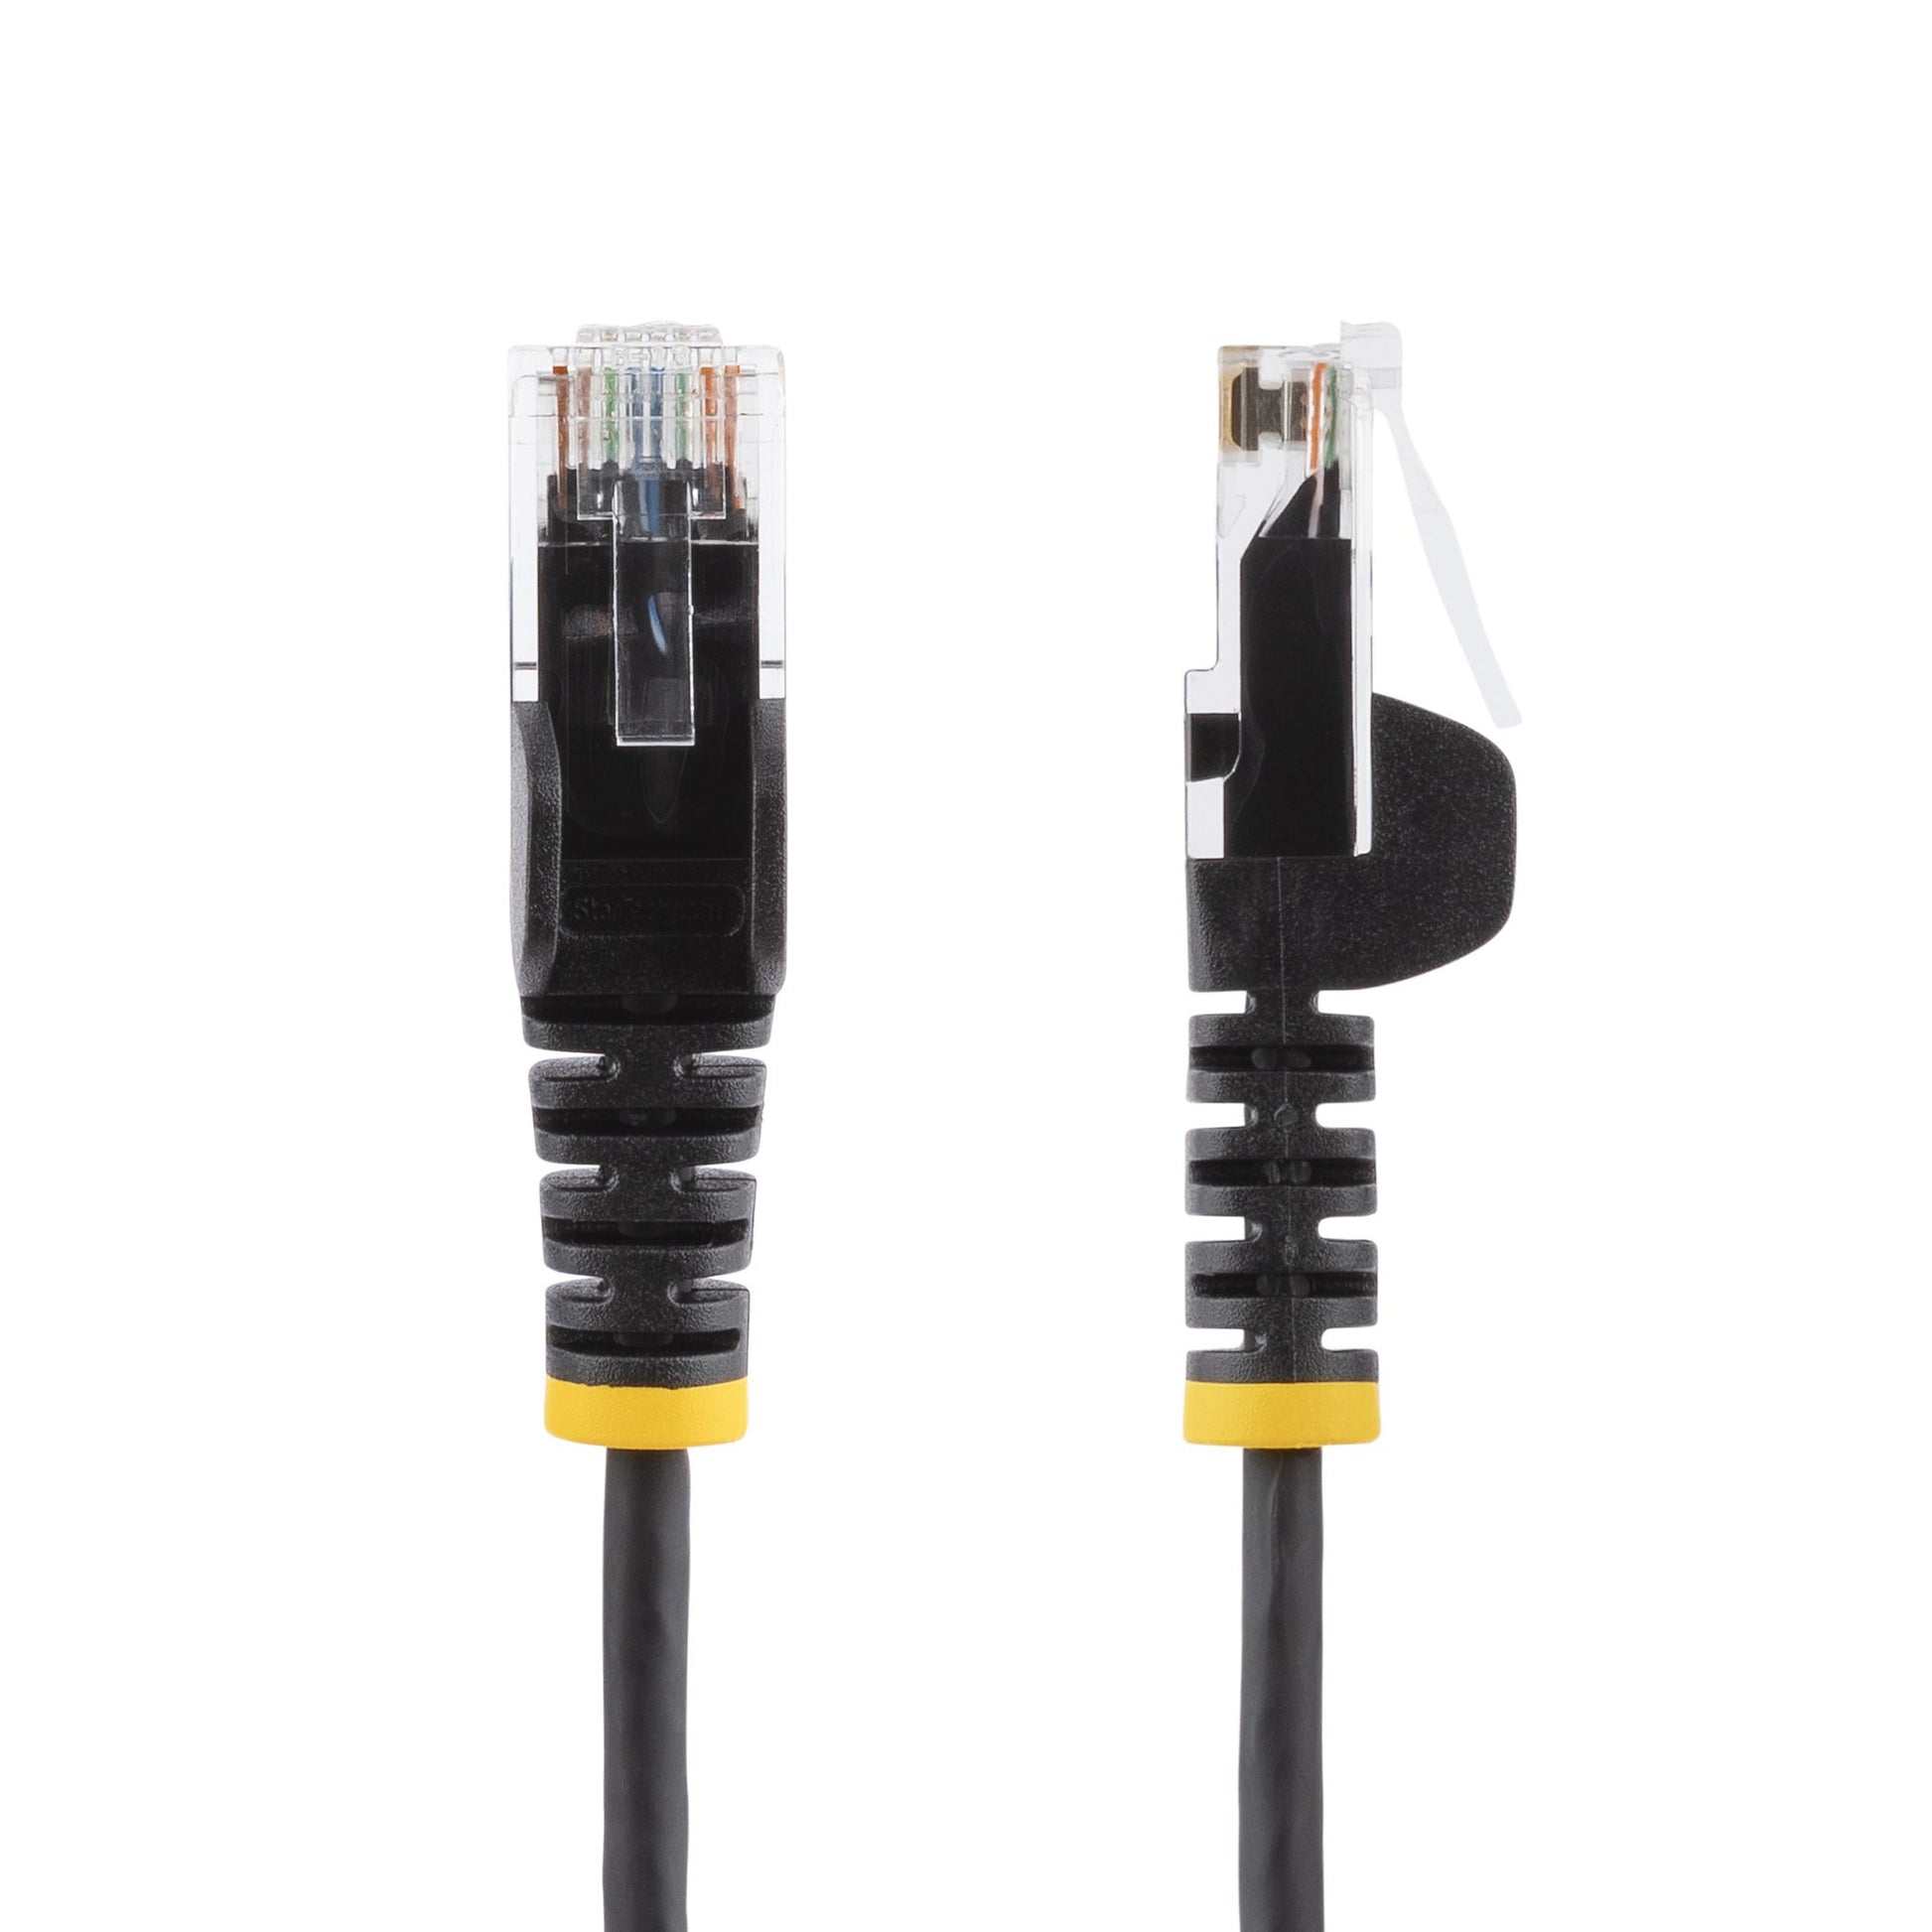 StarTech.com 1 m CAT6 Cable - Slim - Snagless RJ45 Connectors - Black-1